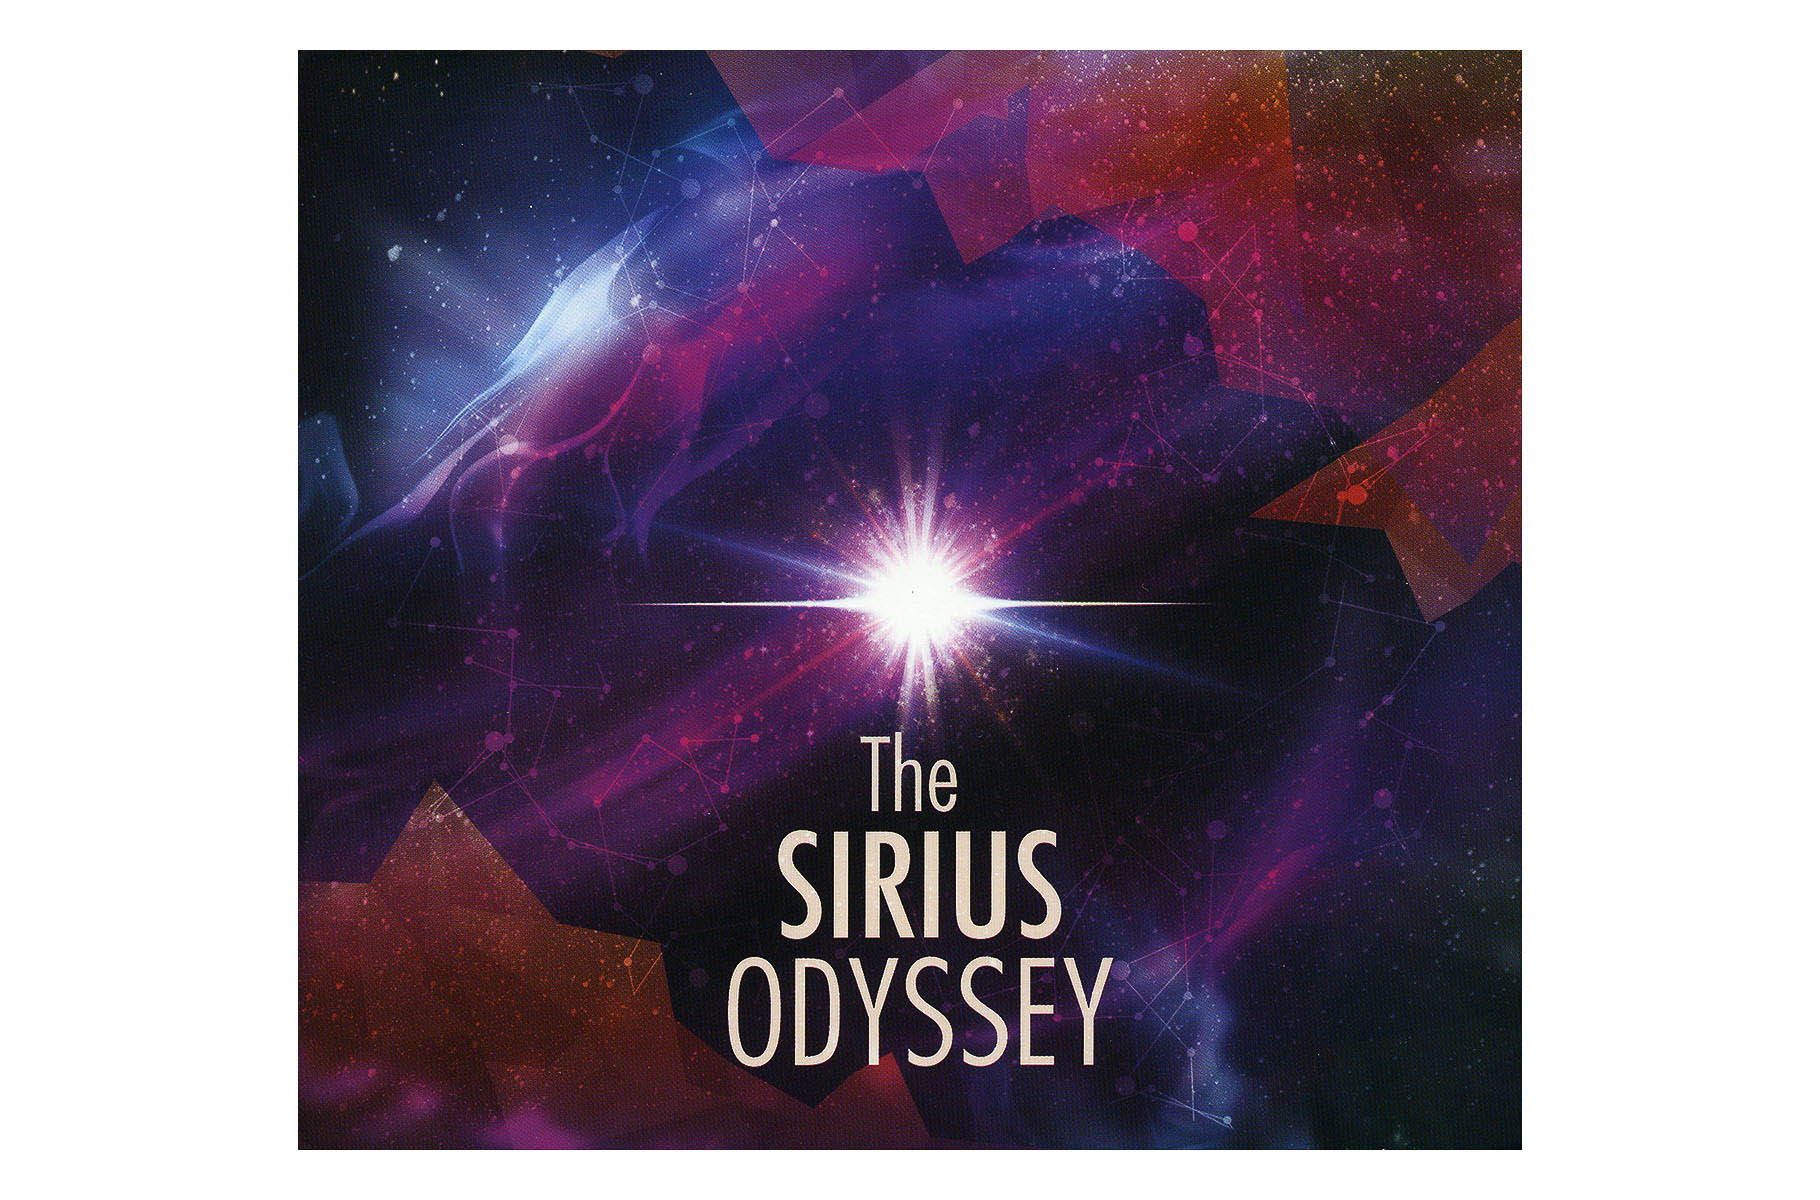 The Sirius Odyssey CD